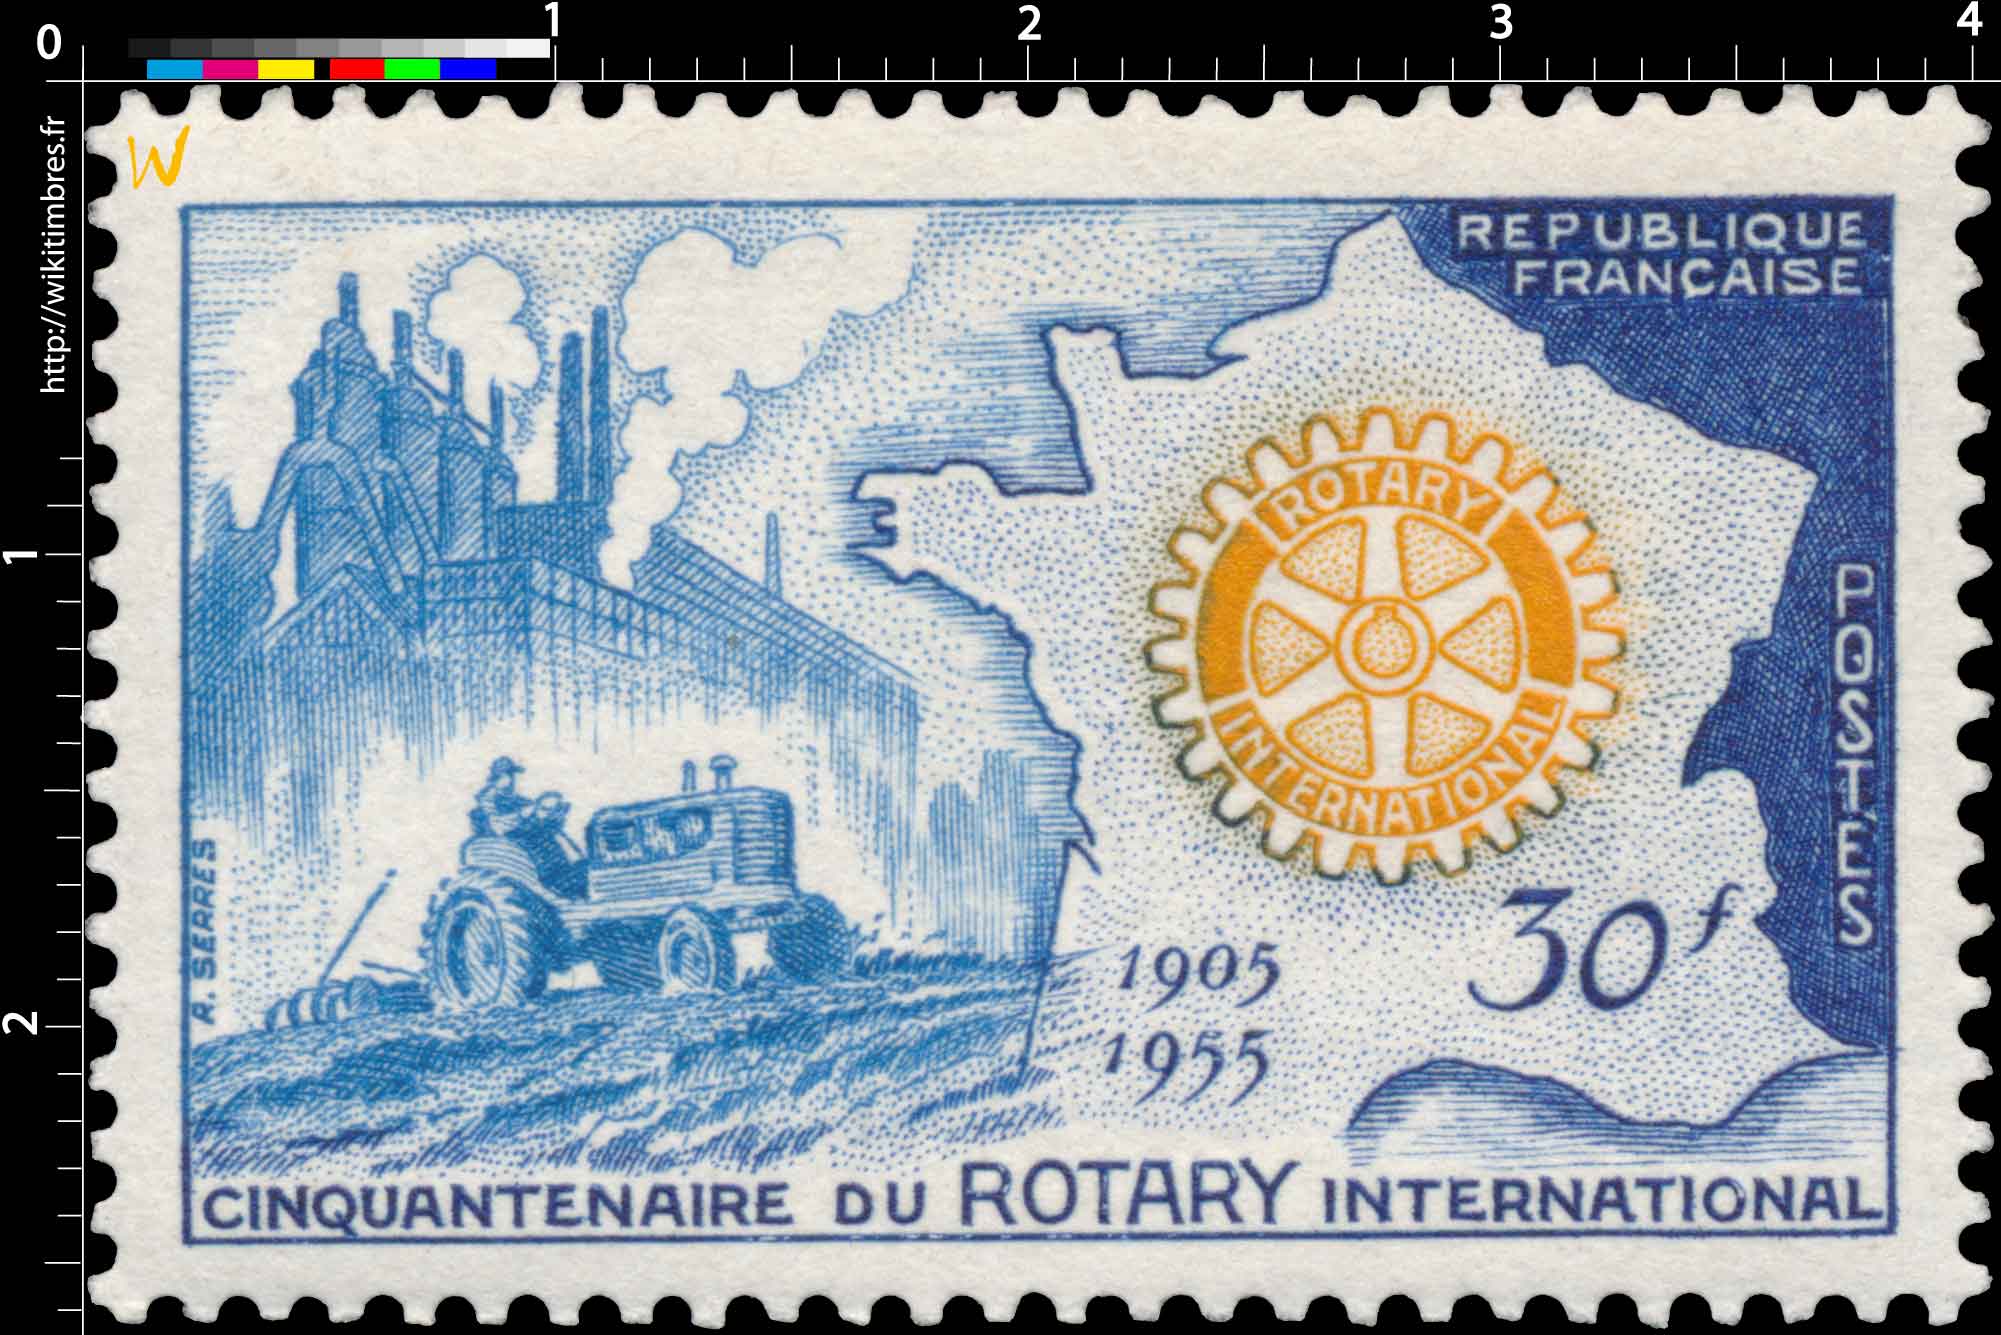 CINQUANTENAIRE DU ROTARY INTERNATIONAL 1905-1955